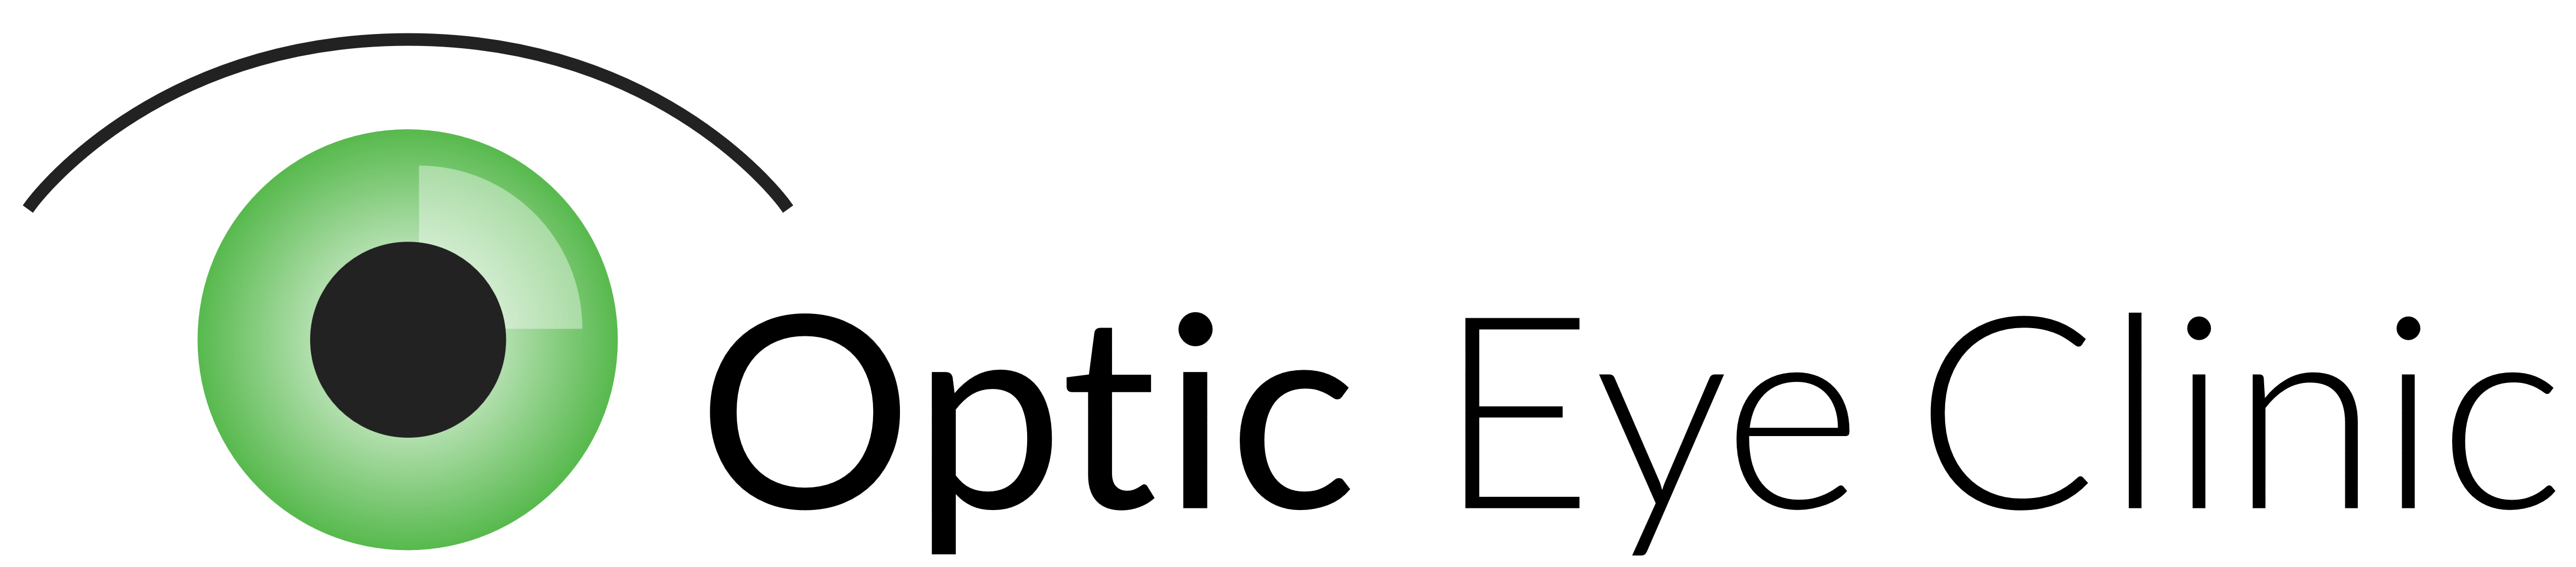 Optic Logo - Optic Eye Clinic – Logos Download